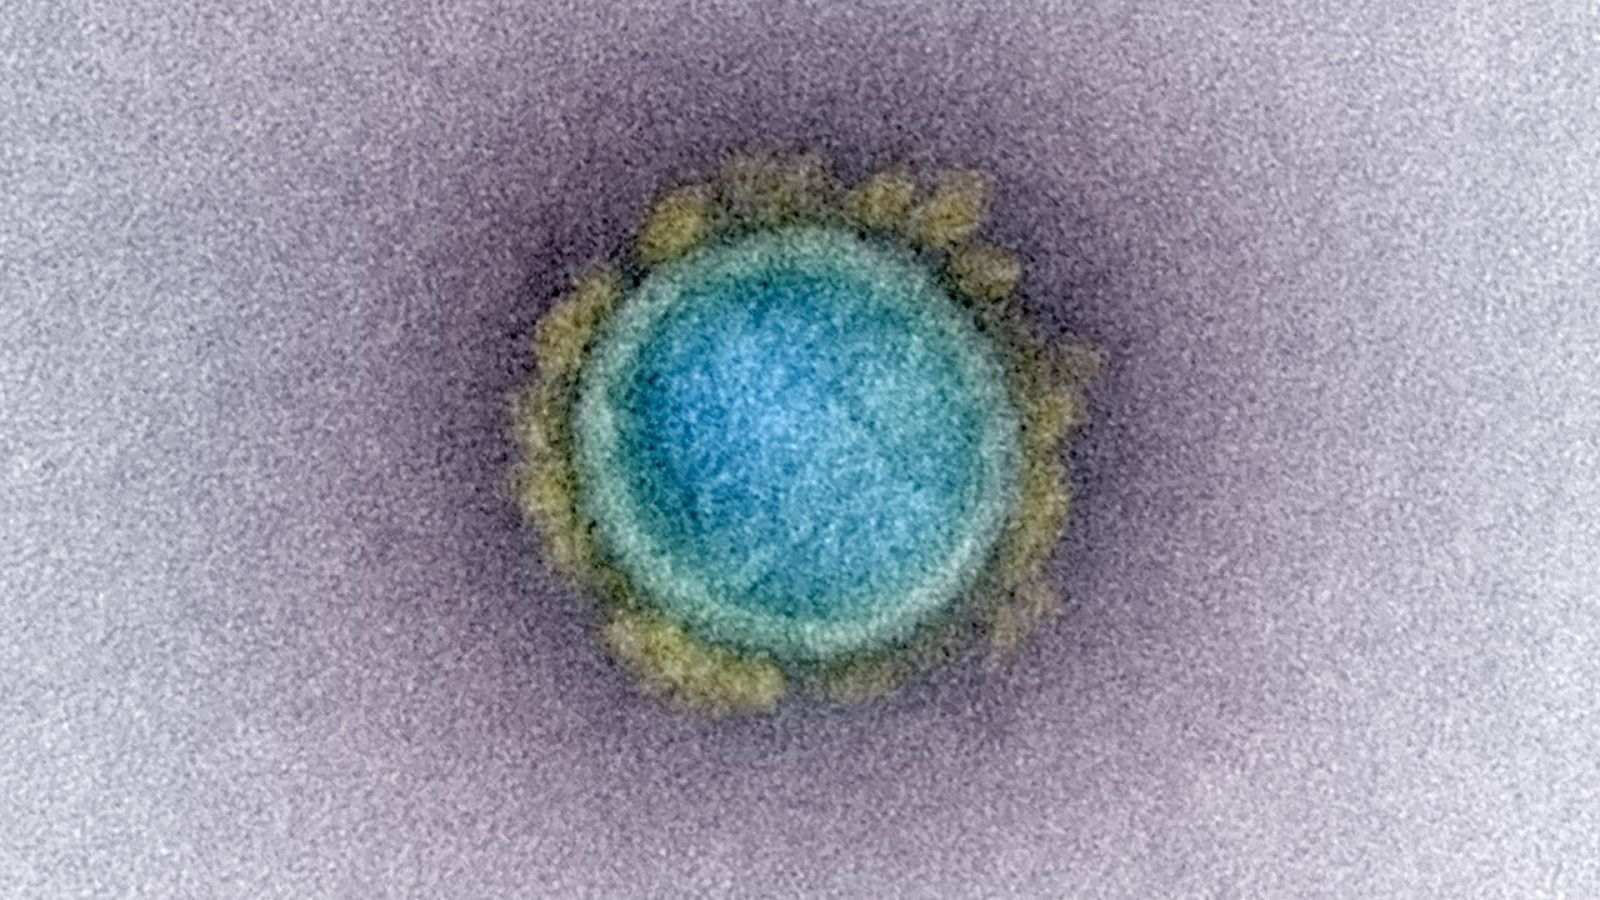 Imagen real del SARS-CoV-2 con color falso. Micrografía electrónica de transmisión de una partícula de virus SARS-CoV-2, aislada de un paciente. Imagen capturada y mejorada con color en la Integrated Research Facility (IRF) del NIAID (febrero de 2020